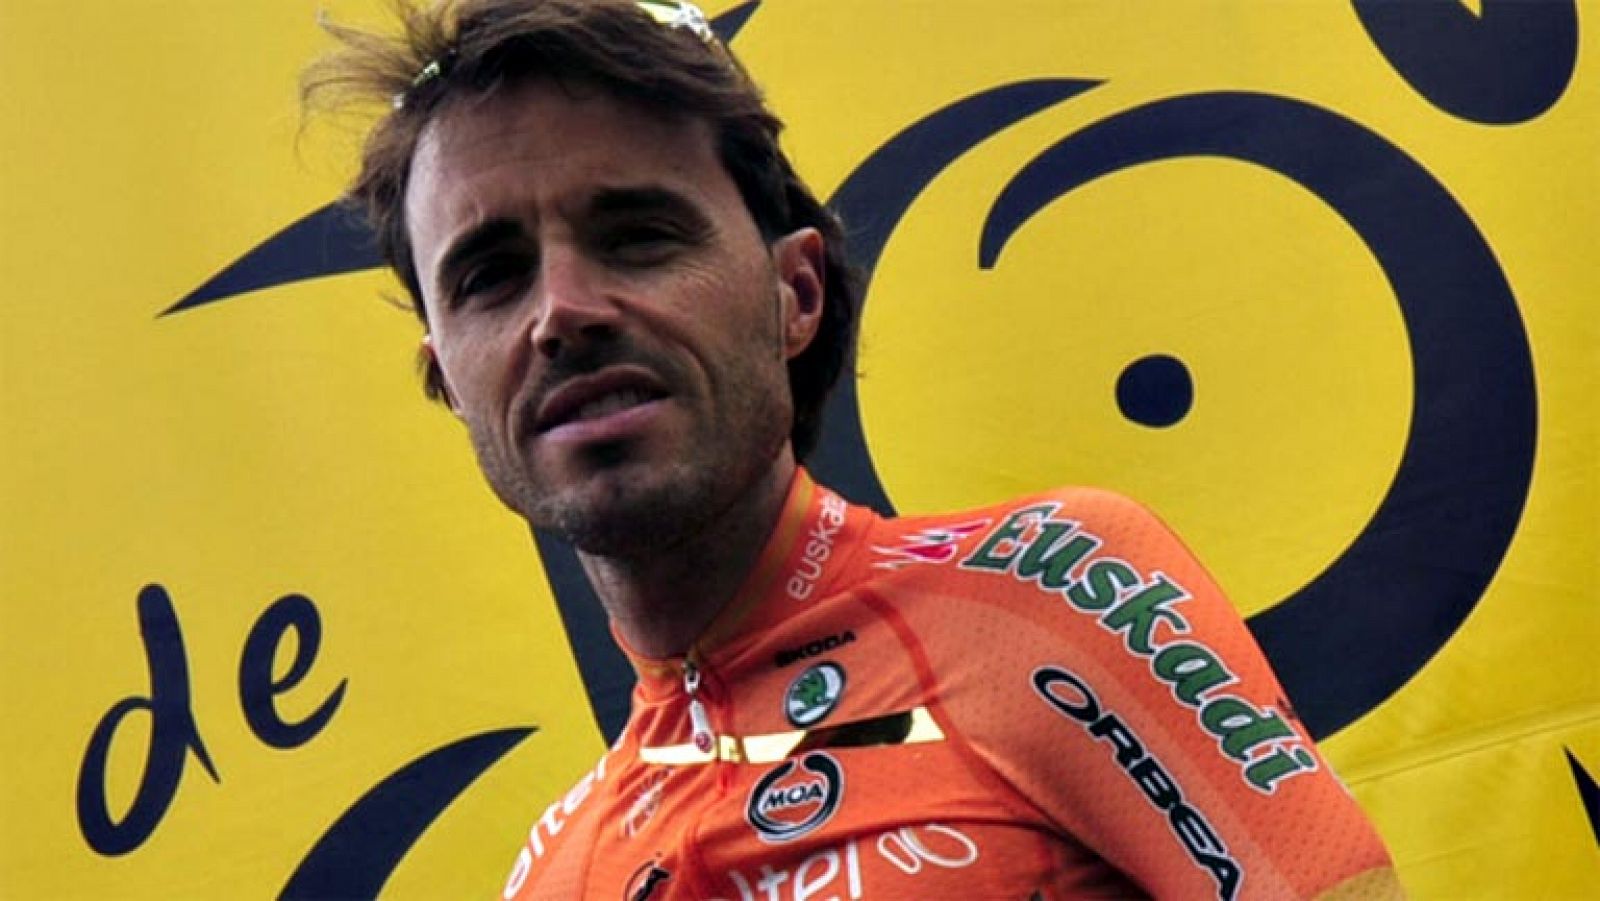 El ciclista español Samuel Sánchez, campeón olímpico en Pekín  2008, ha fichado por el equipo BMC, liderado por el ciclista  australiano Cadel Evans, según ha anunciado el Mánager General, Jim  Ochowicz, a través de la página web del equipo estadouni